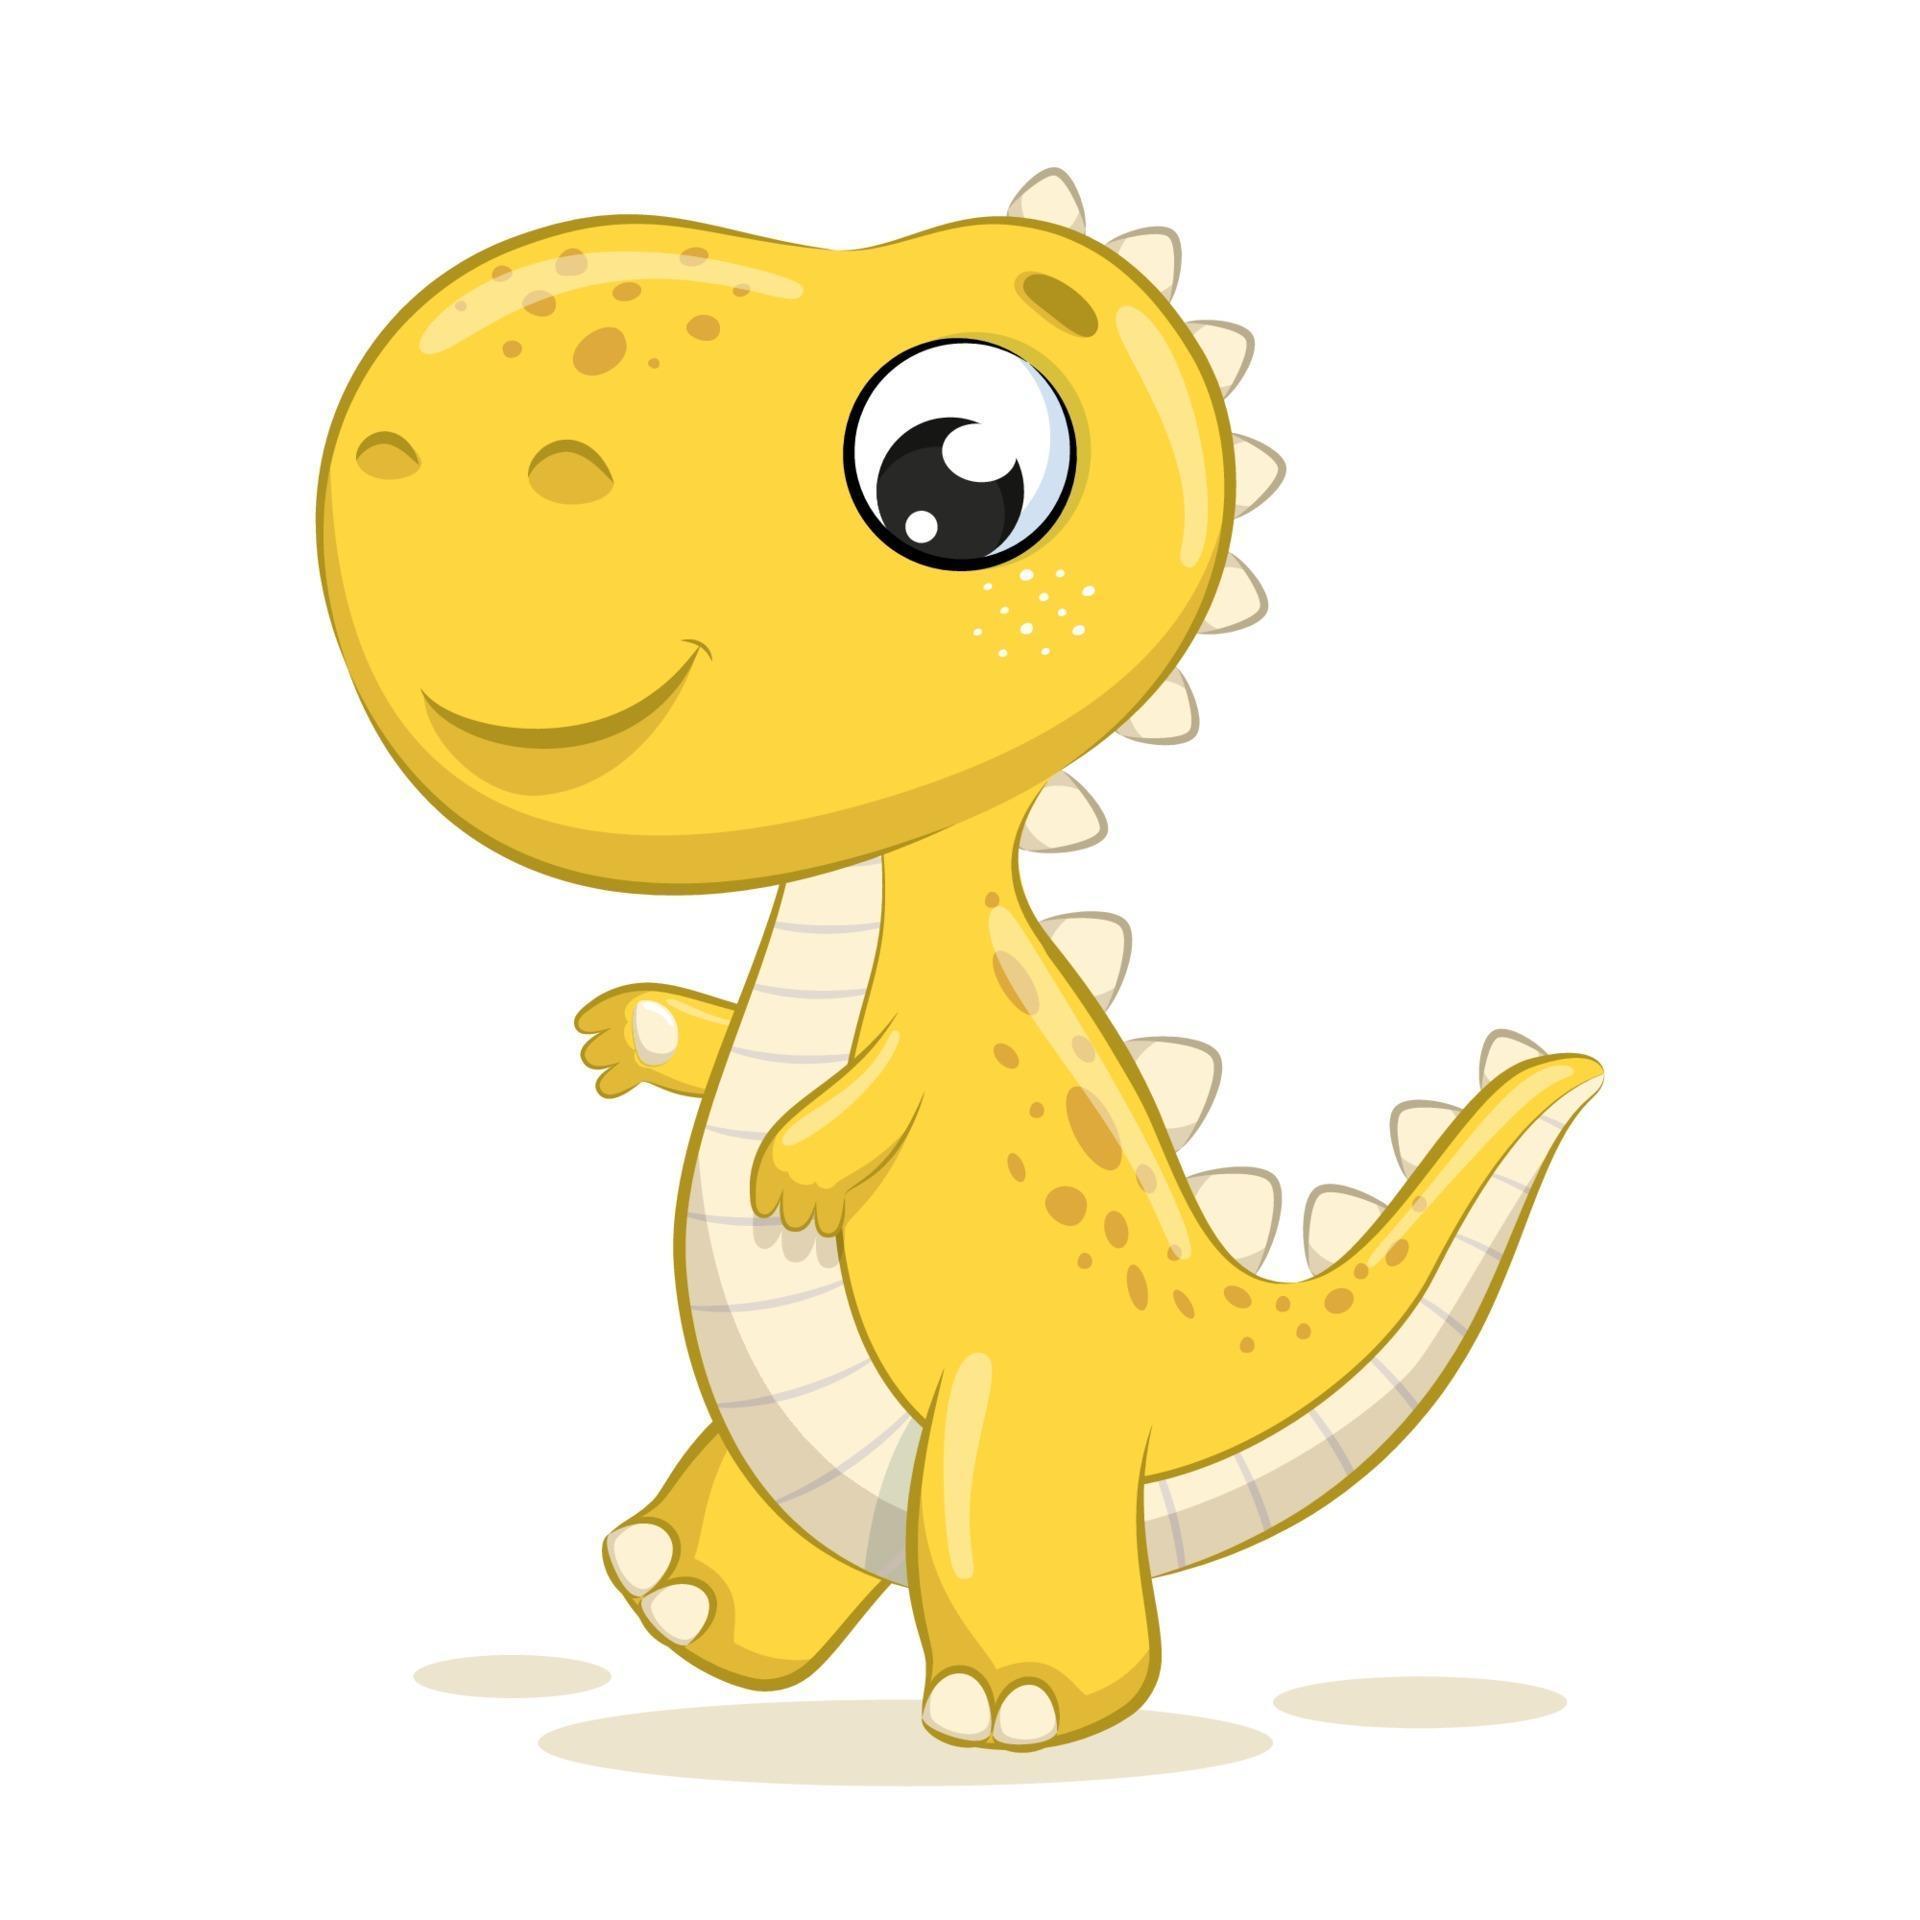 Cute baby dinosaur illustration. Vector cartoon illustration. 3242238